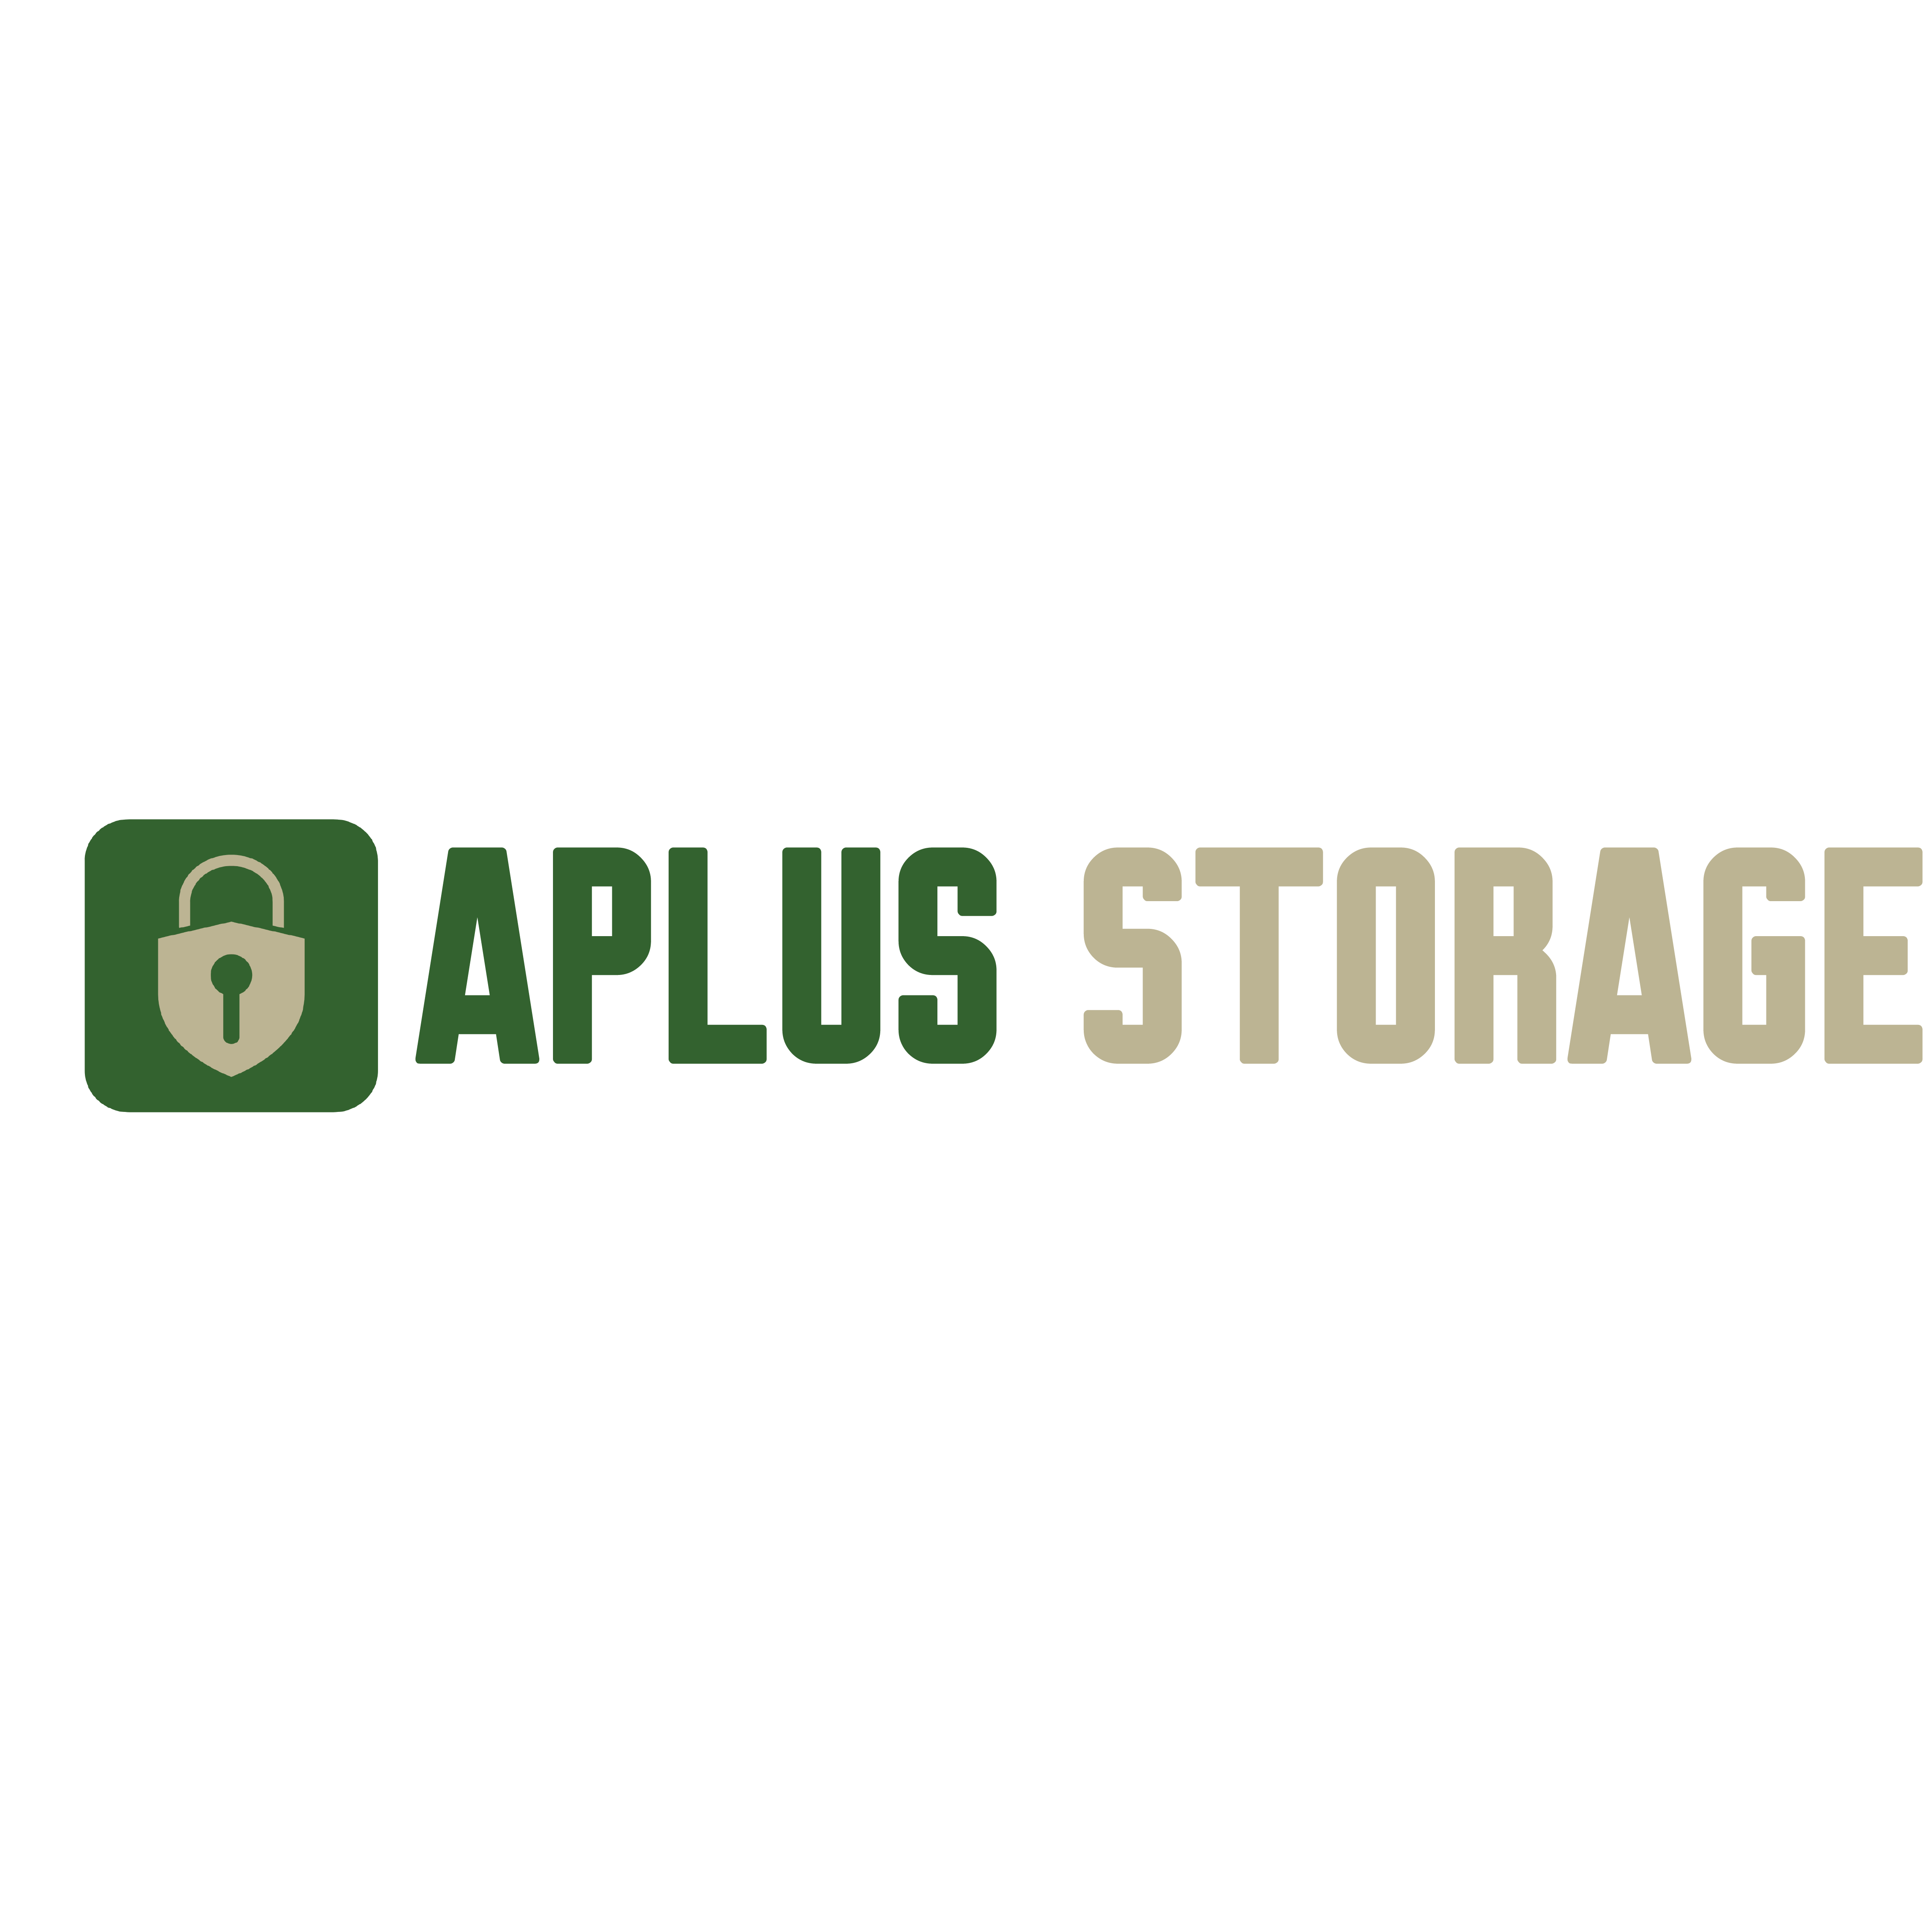 Aplus Storage - York, PA 17406 - (717)266-6678 | ShowMeLocal.com